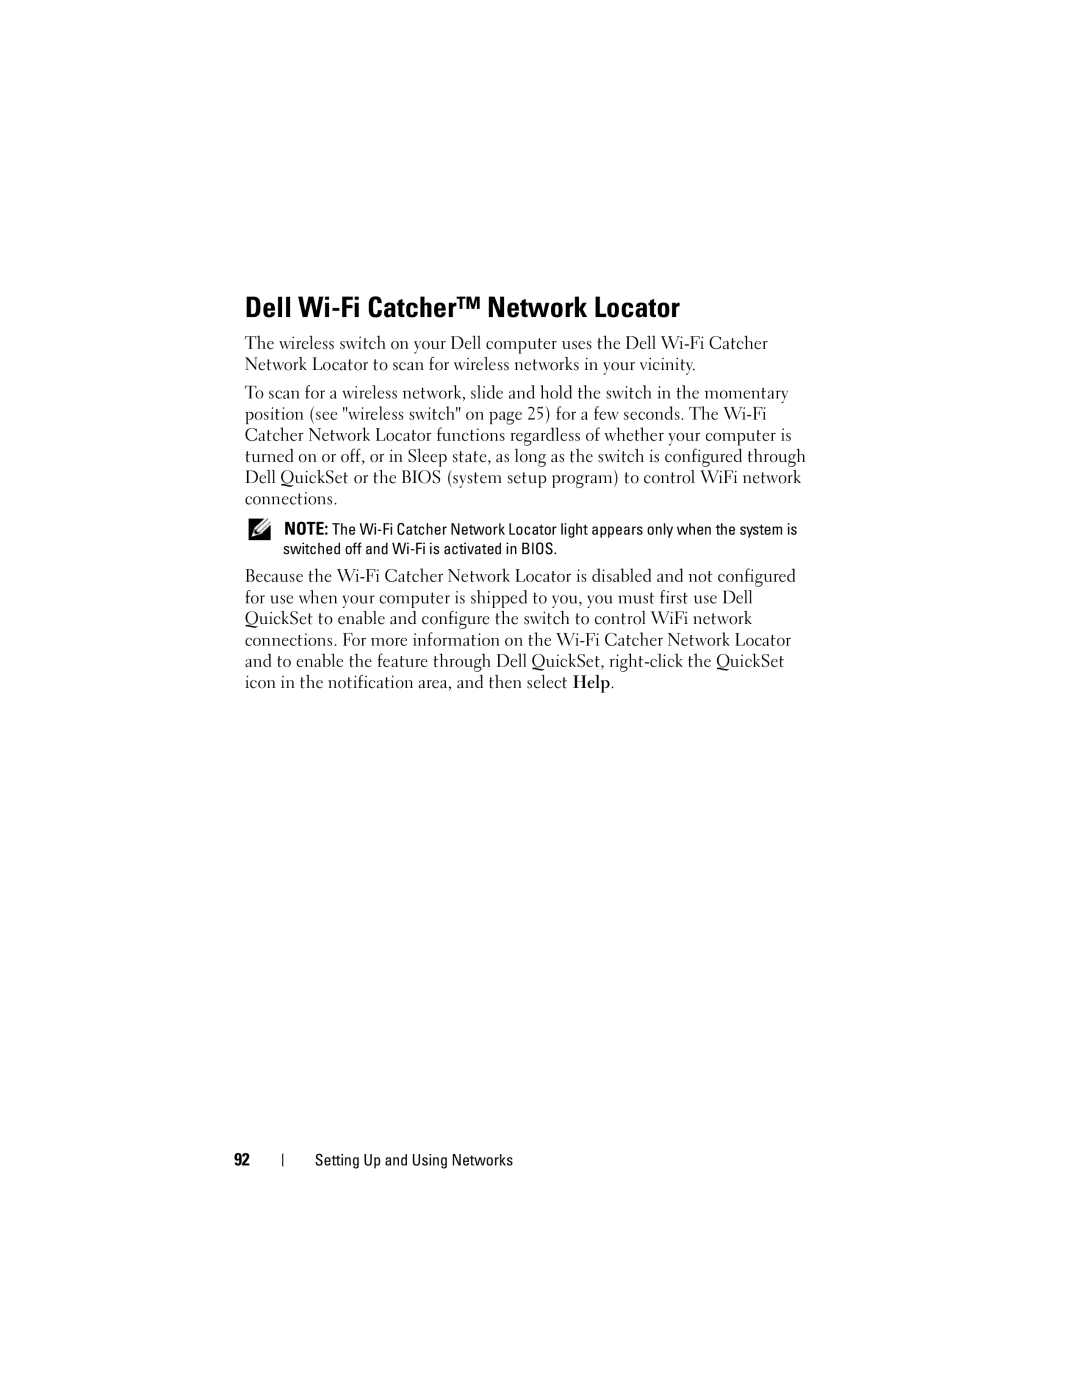 Dell GU051 manual Dell Wi-Fi Catcher Network Locator 